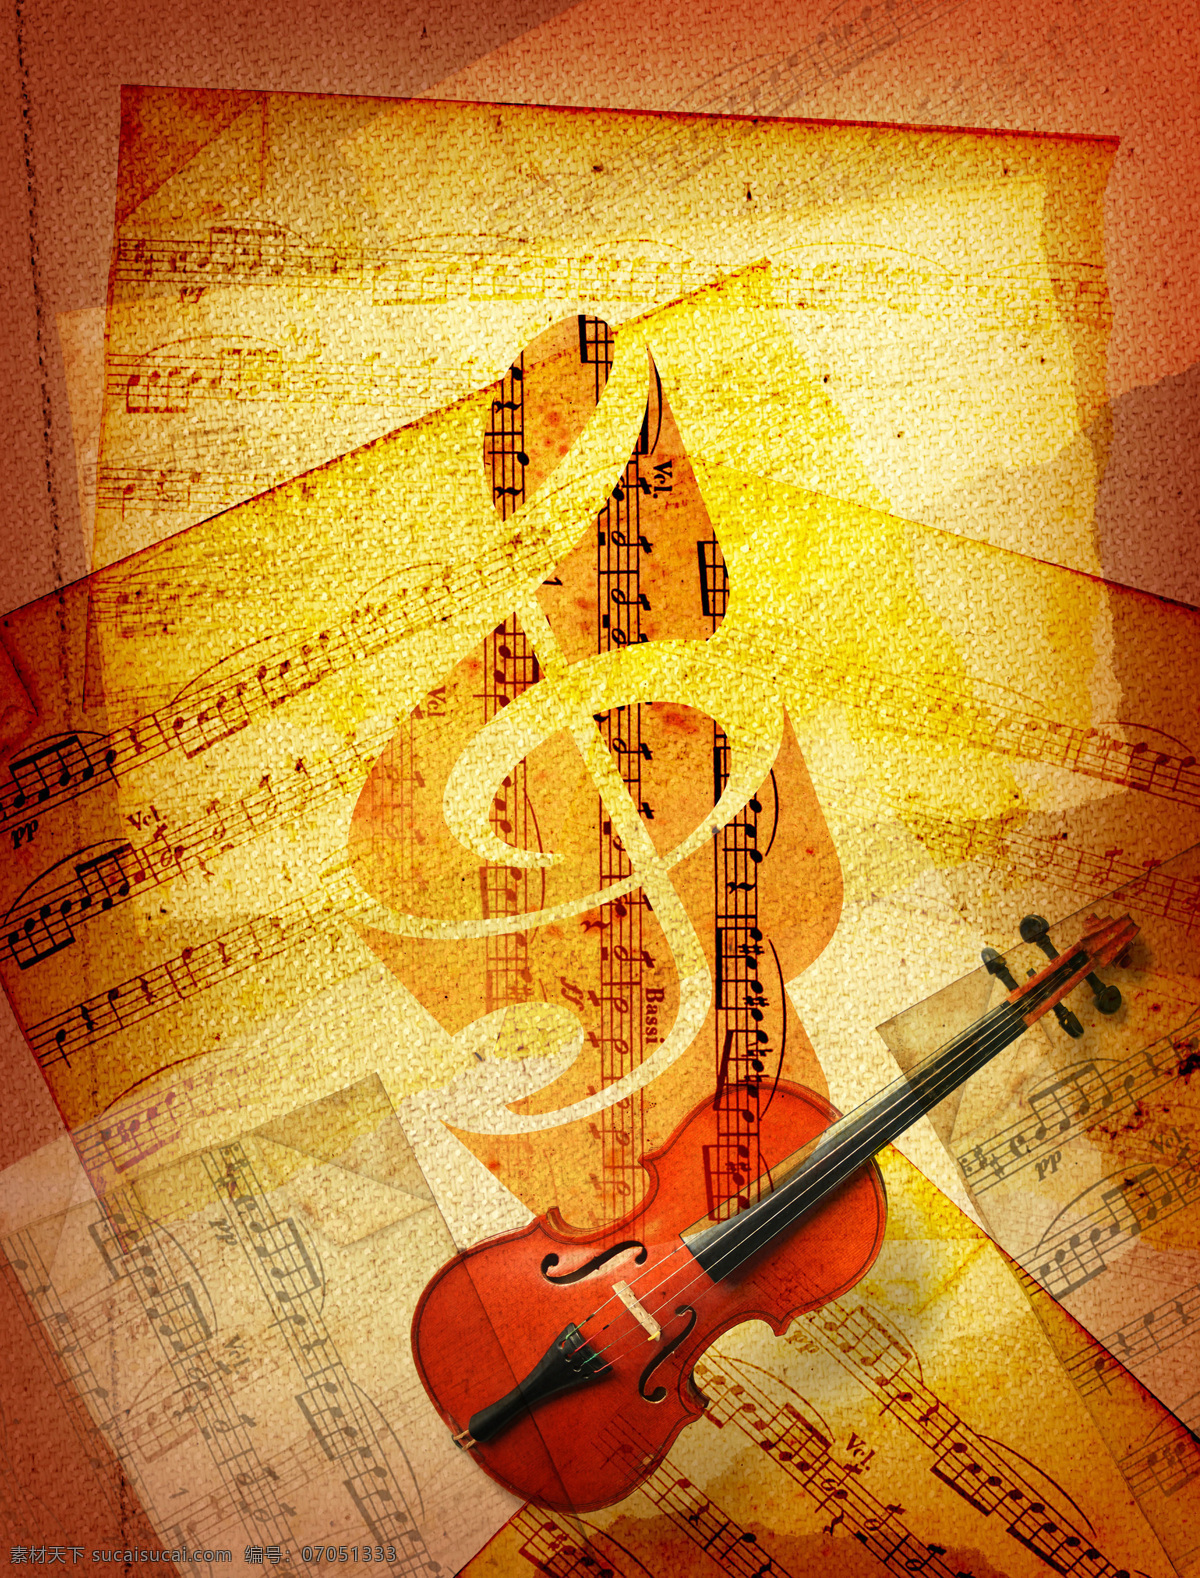 小提琴与乐谱 小提琴 音乐 乐器 影音娱乐 音乐符 乐谱 音乐背景 生活百科 黄色